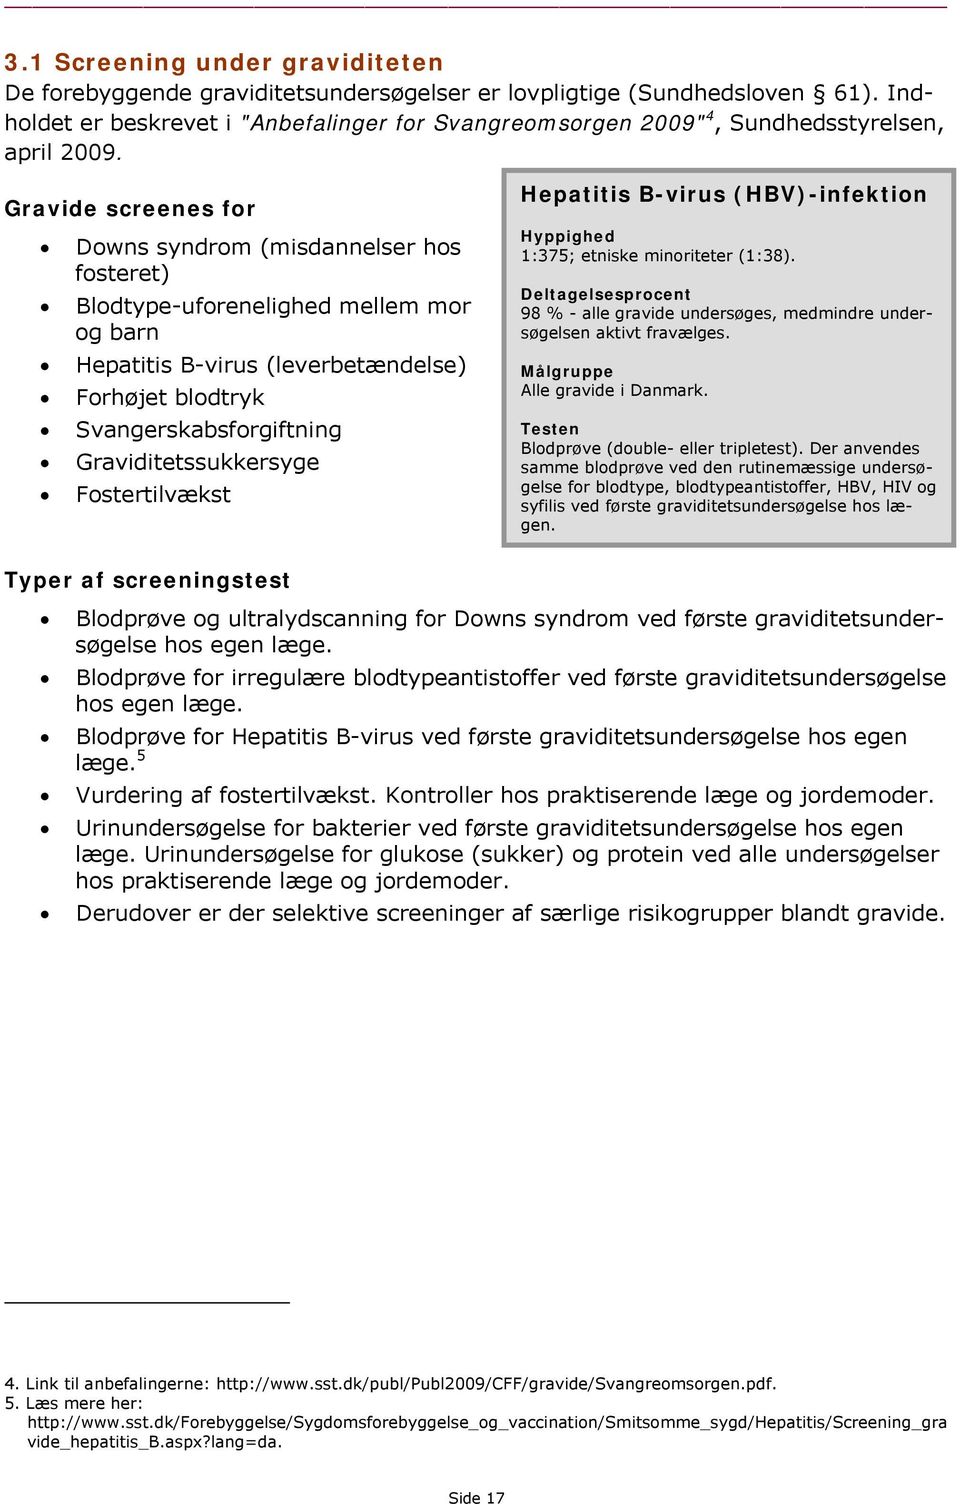 Gravide screenes for Downs syndrom (misdannelser hos fosteret) Blodtype-uforenelighed mellem mor og barn Hepatitis B-virus (leverbetændelse) Forhøjet blodtryk Svangerskabsforgiftning